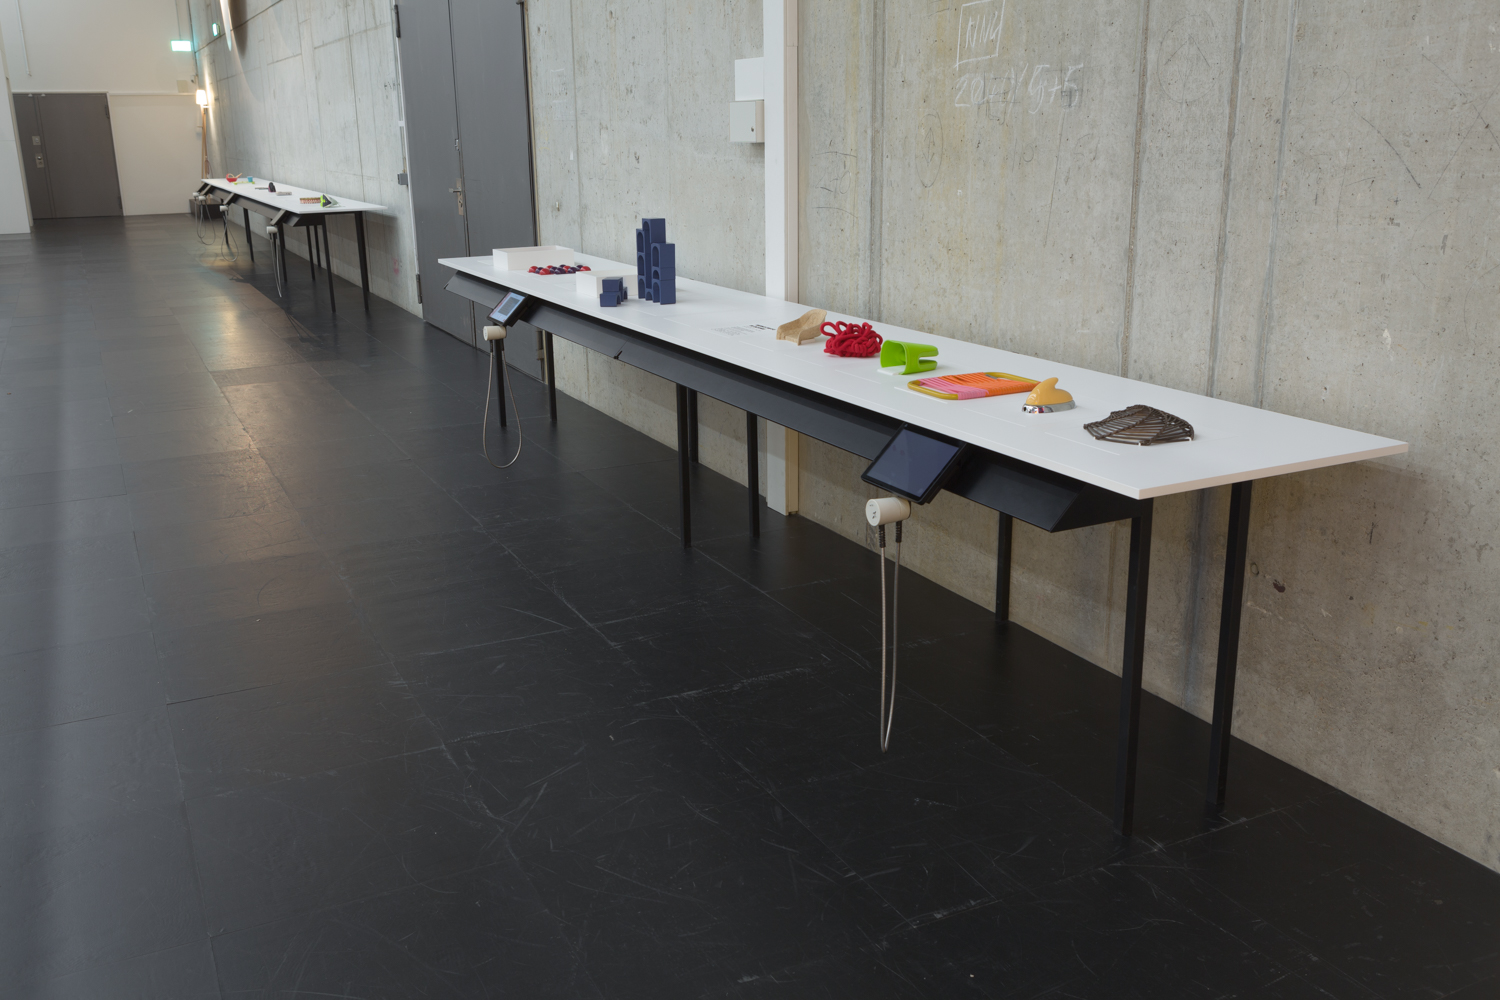 Das Bild zeigt die Taststation im Ausstellungsraum: Ein Tisch steht vor einer grauen Betonwand. Er hat ein dünnes, schwarzes Tischgestell und eine weiße Tischplatte. Darauf befinden sich mehrere bunte Tastobjekte.